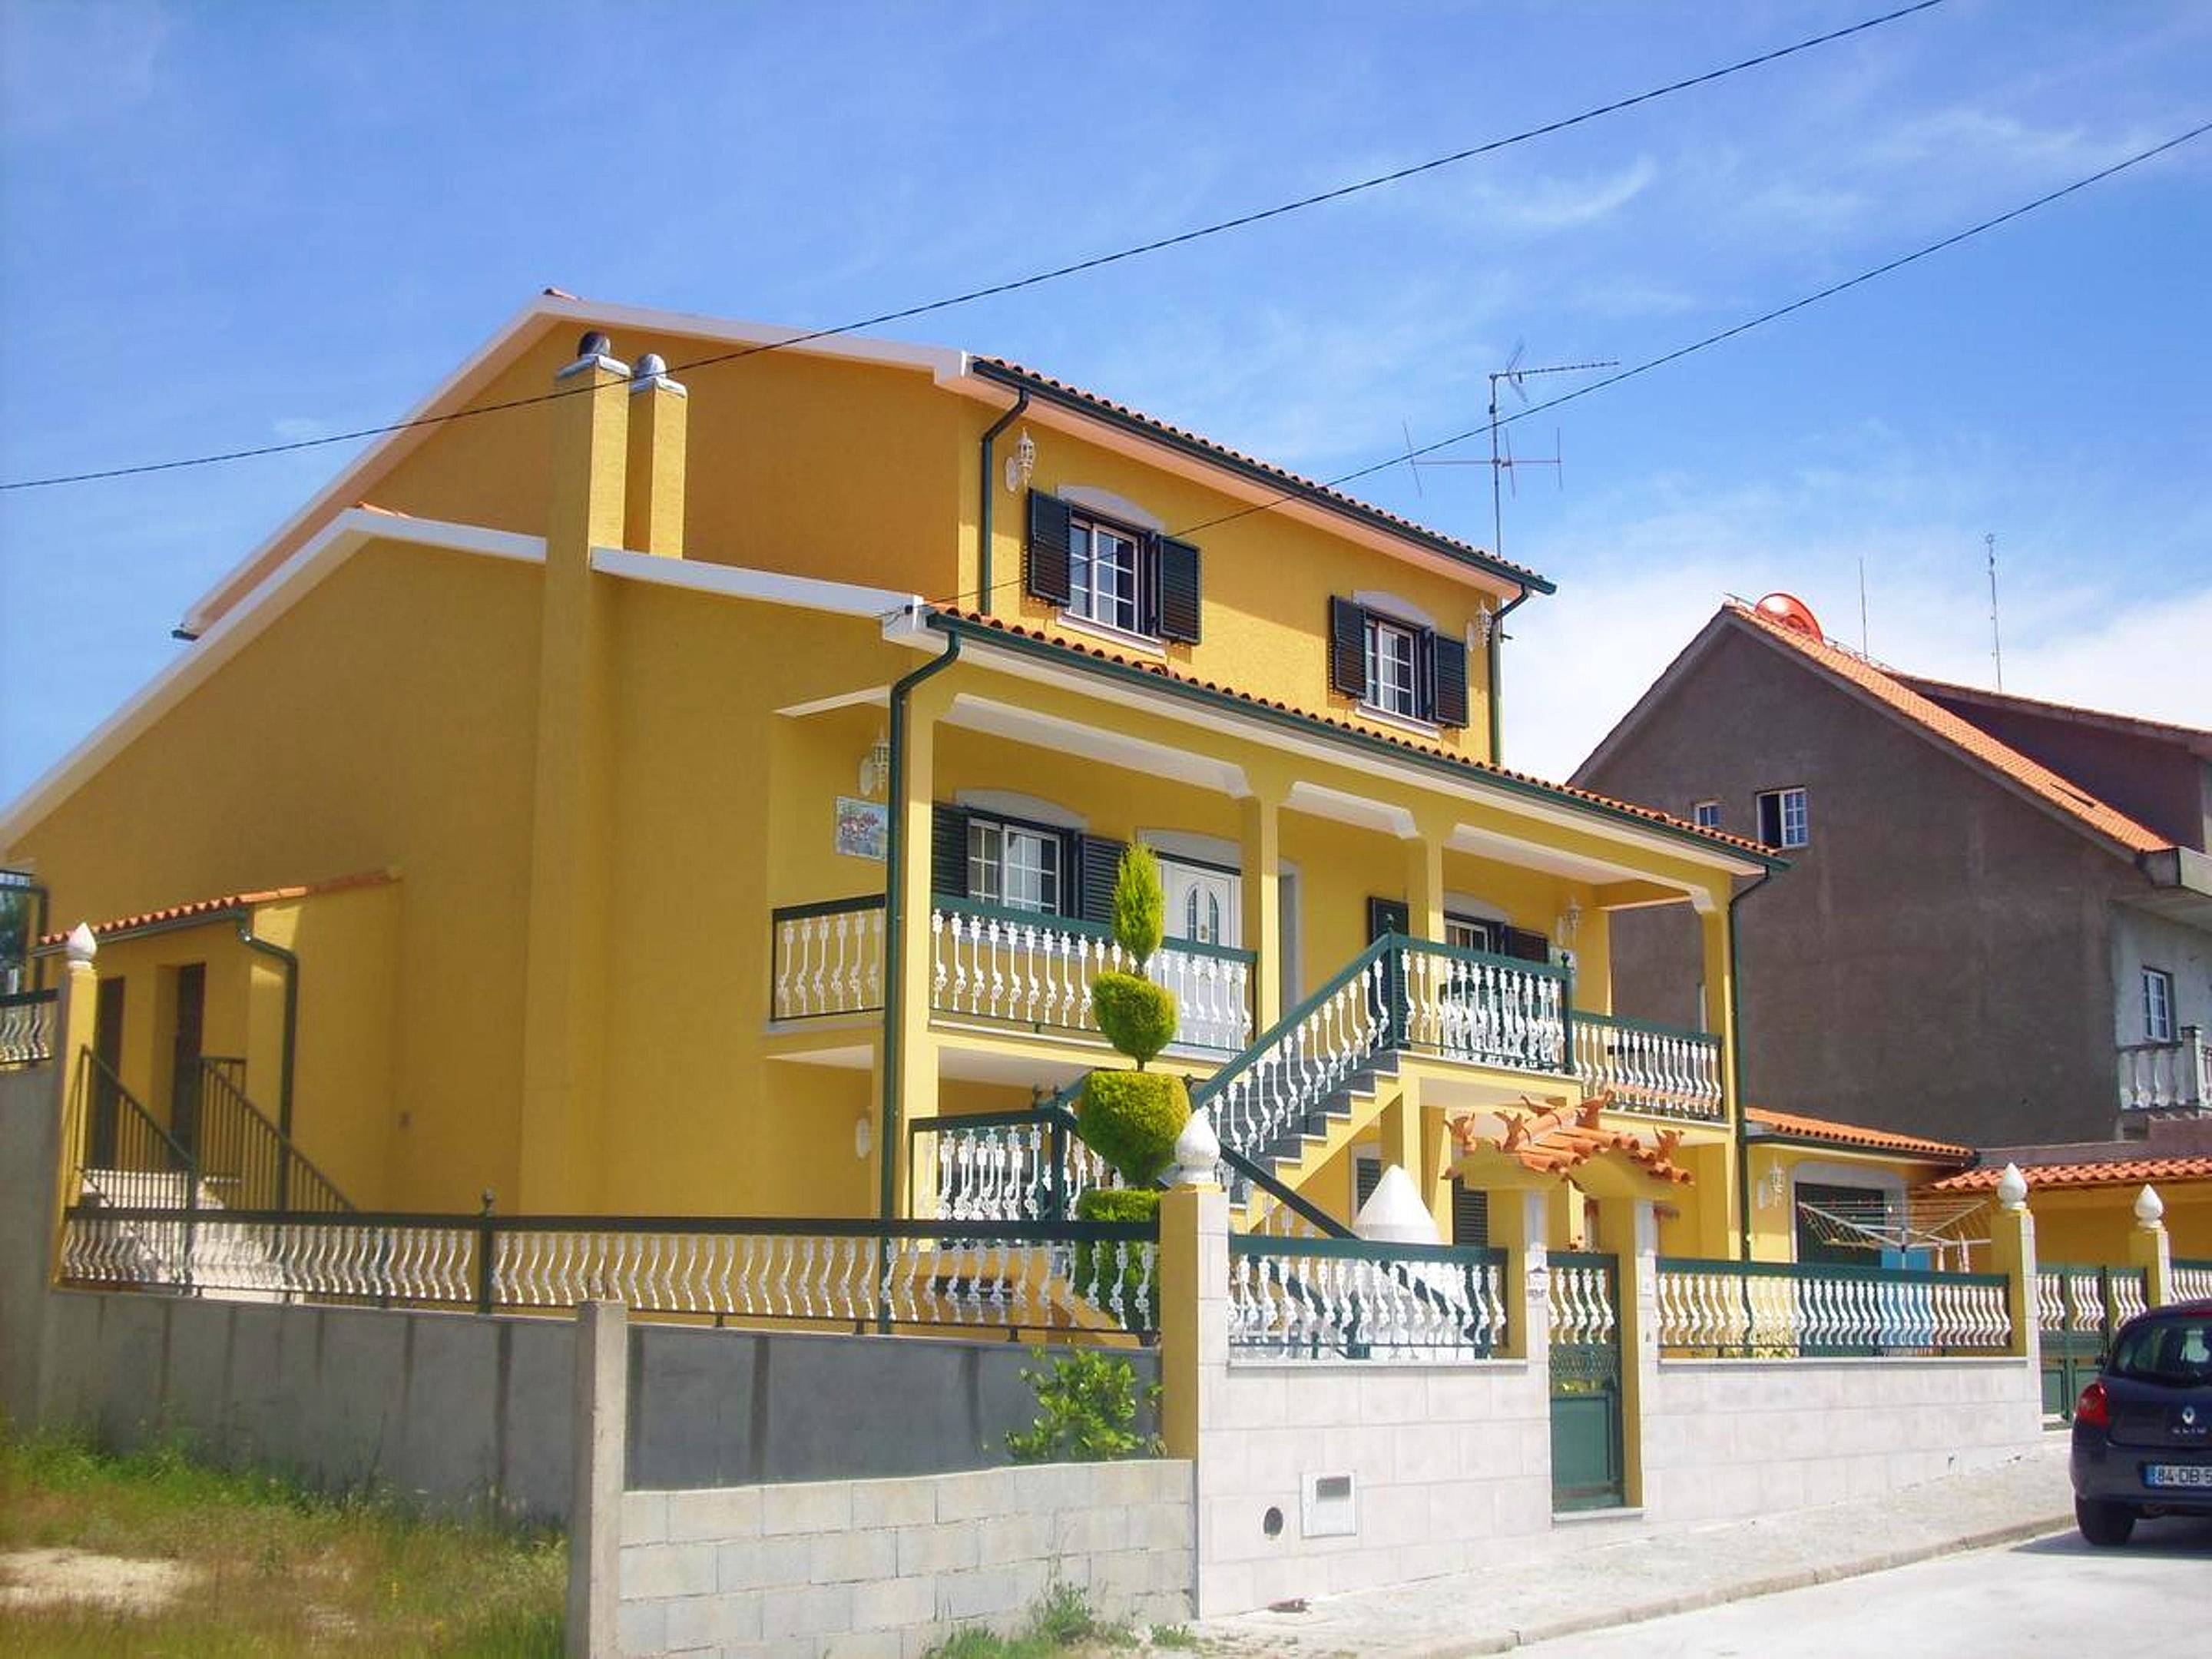 Holiday Rentals Aguiar Da Beira Guarda Apartments Holiday Homes And Villas